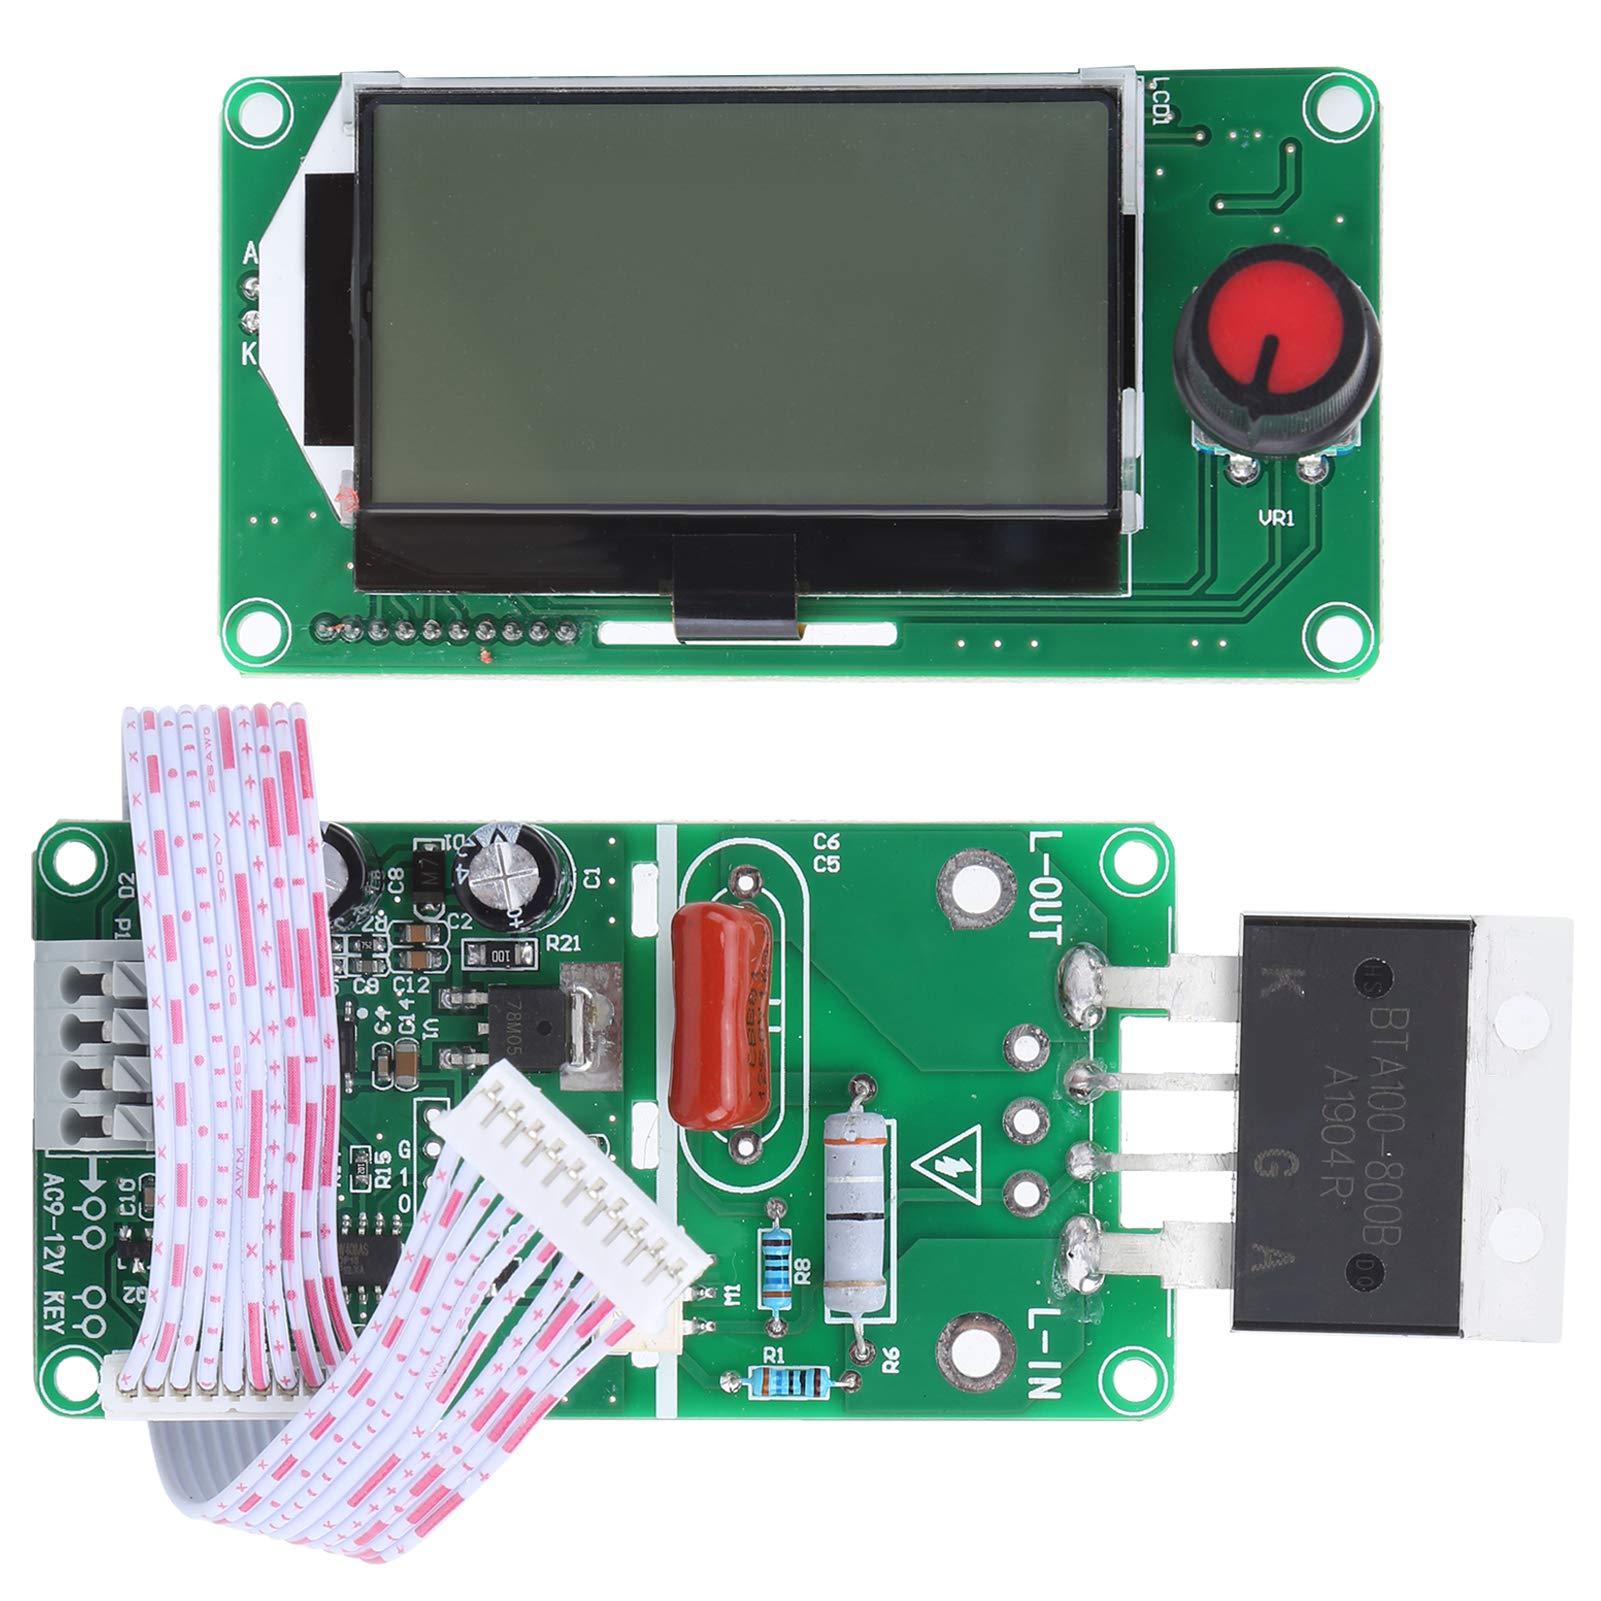 Zwinner Spot Welder Time Control Schweißmodul, 100A Digital LCD Double Pulse Encoder Punktschweißgerät Maschinenzeitsteuermodul, Akku-Punktschweißgerät für 18650 Lithium-Akku